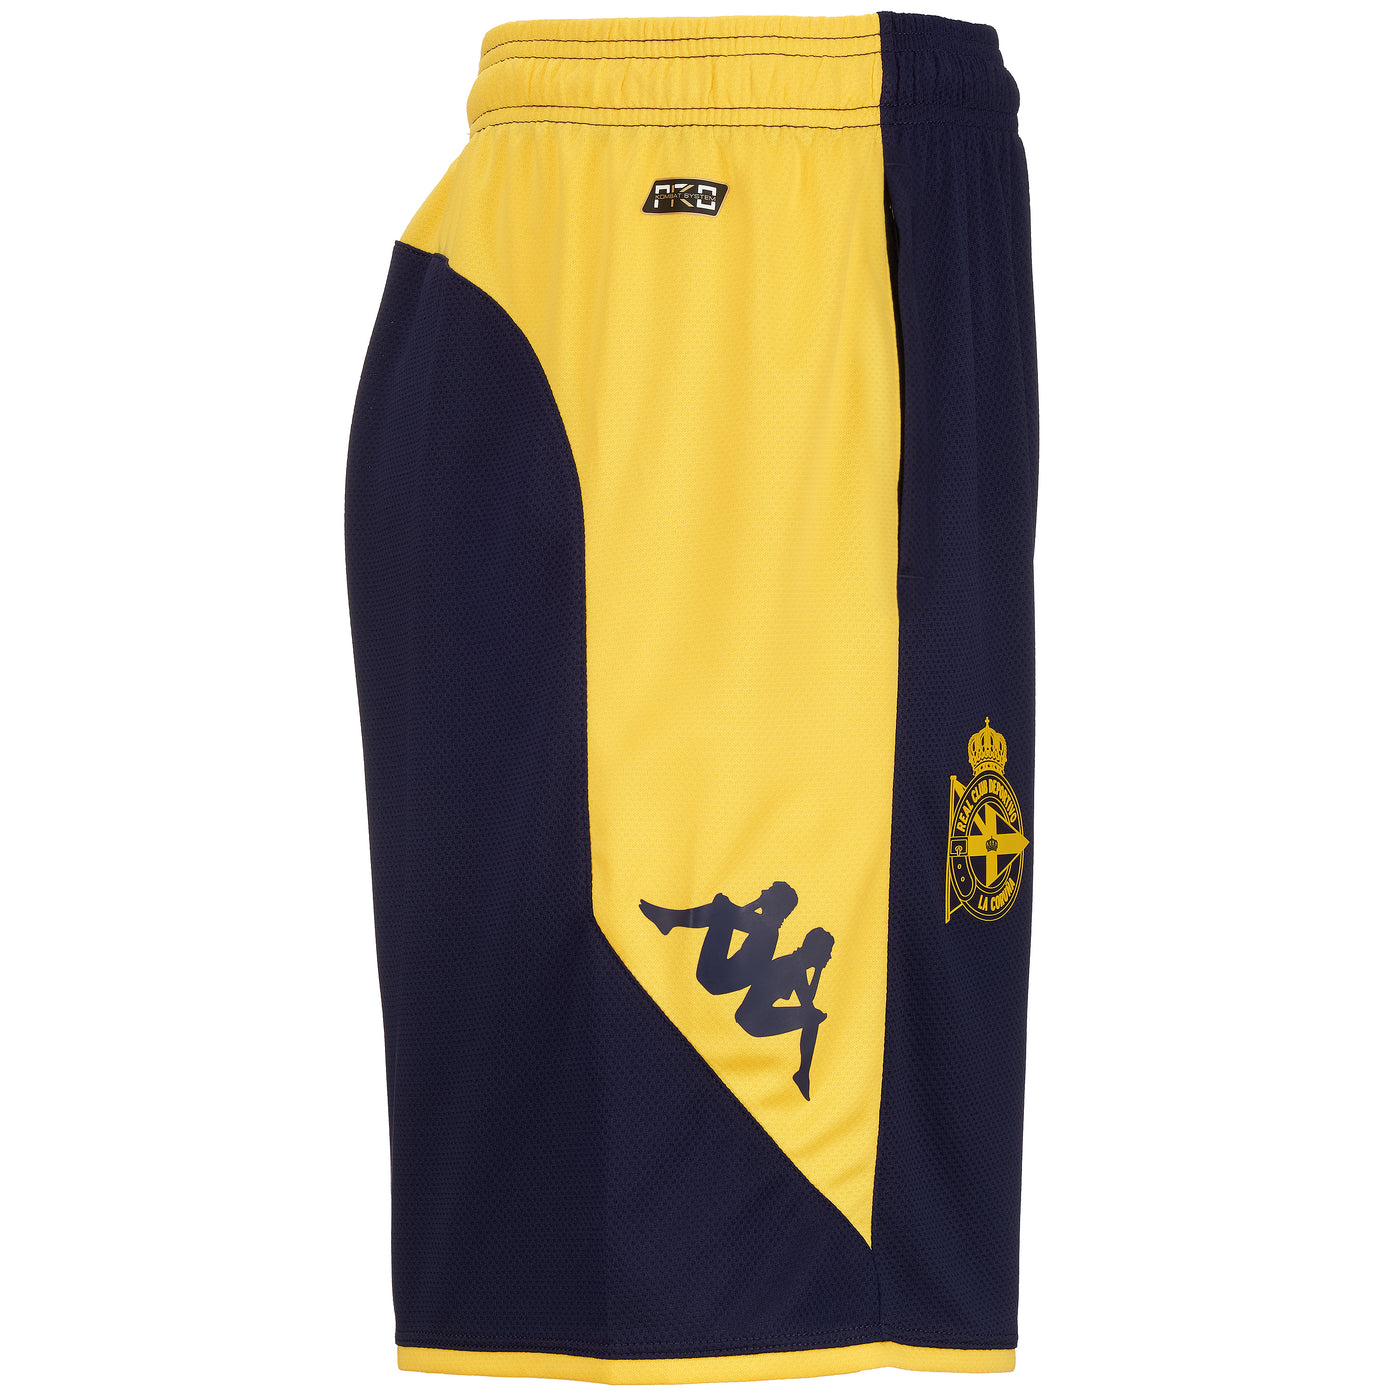 Pantalones cortos Ahorazip Pro 7 Deportivo Azul Hombre